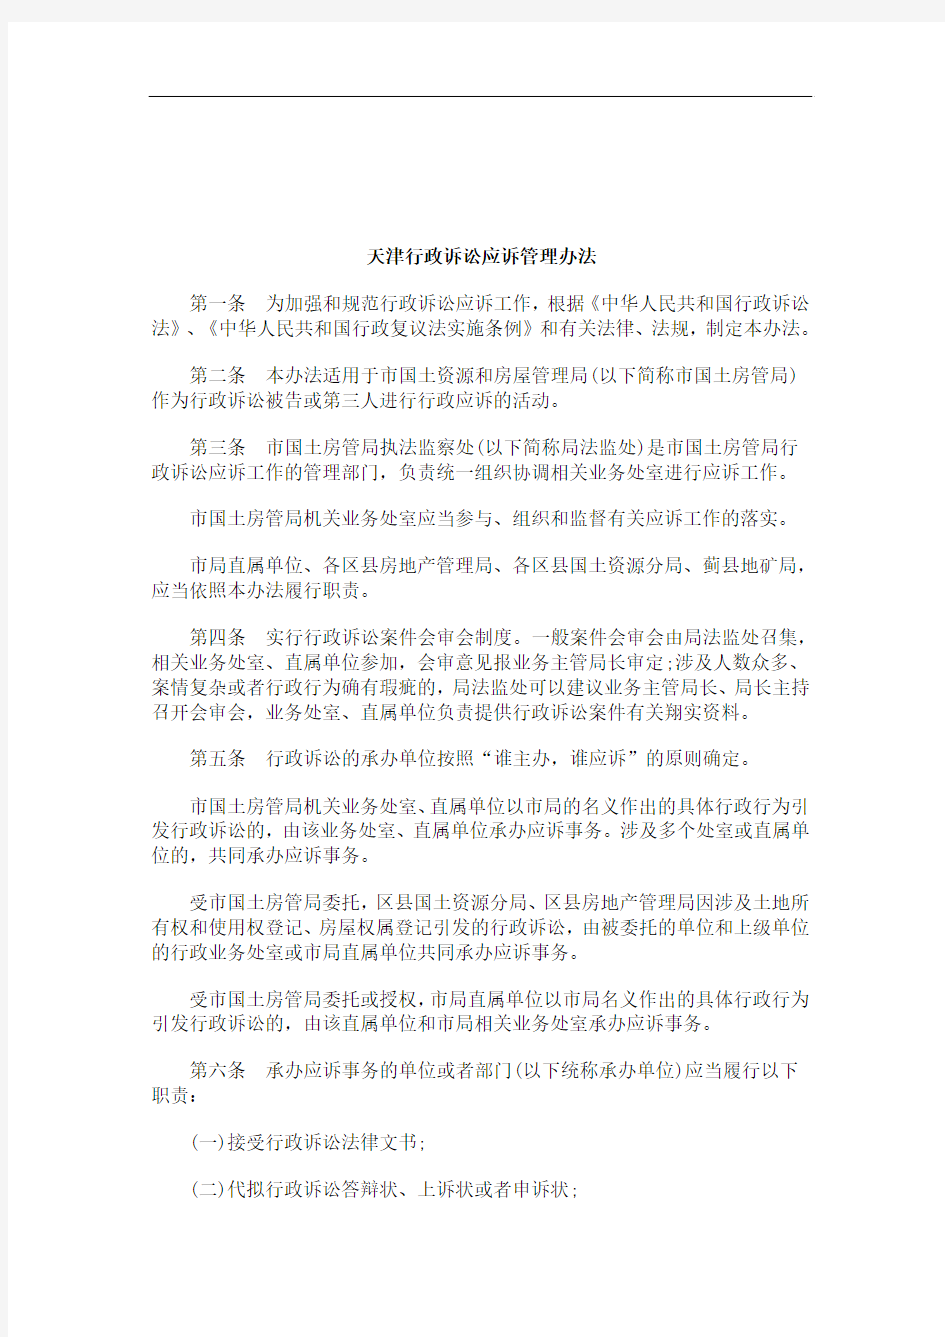 解析天津行政诉讼应诉管理办法